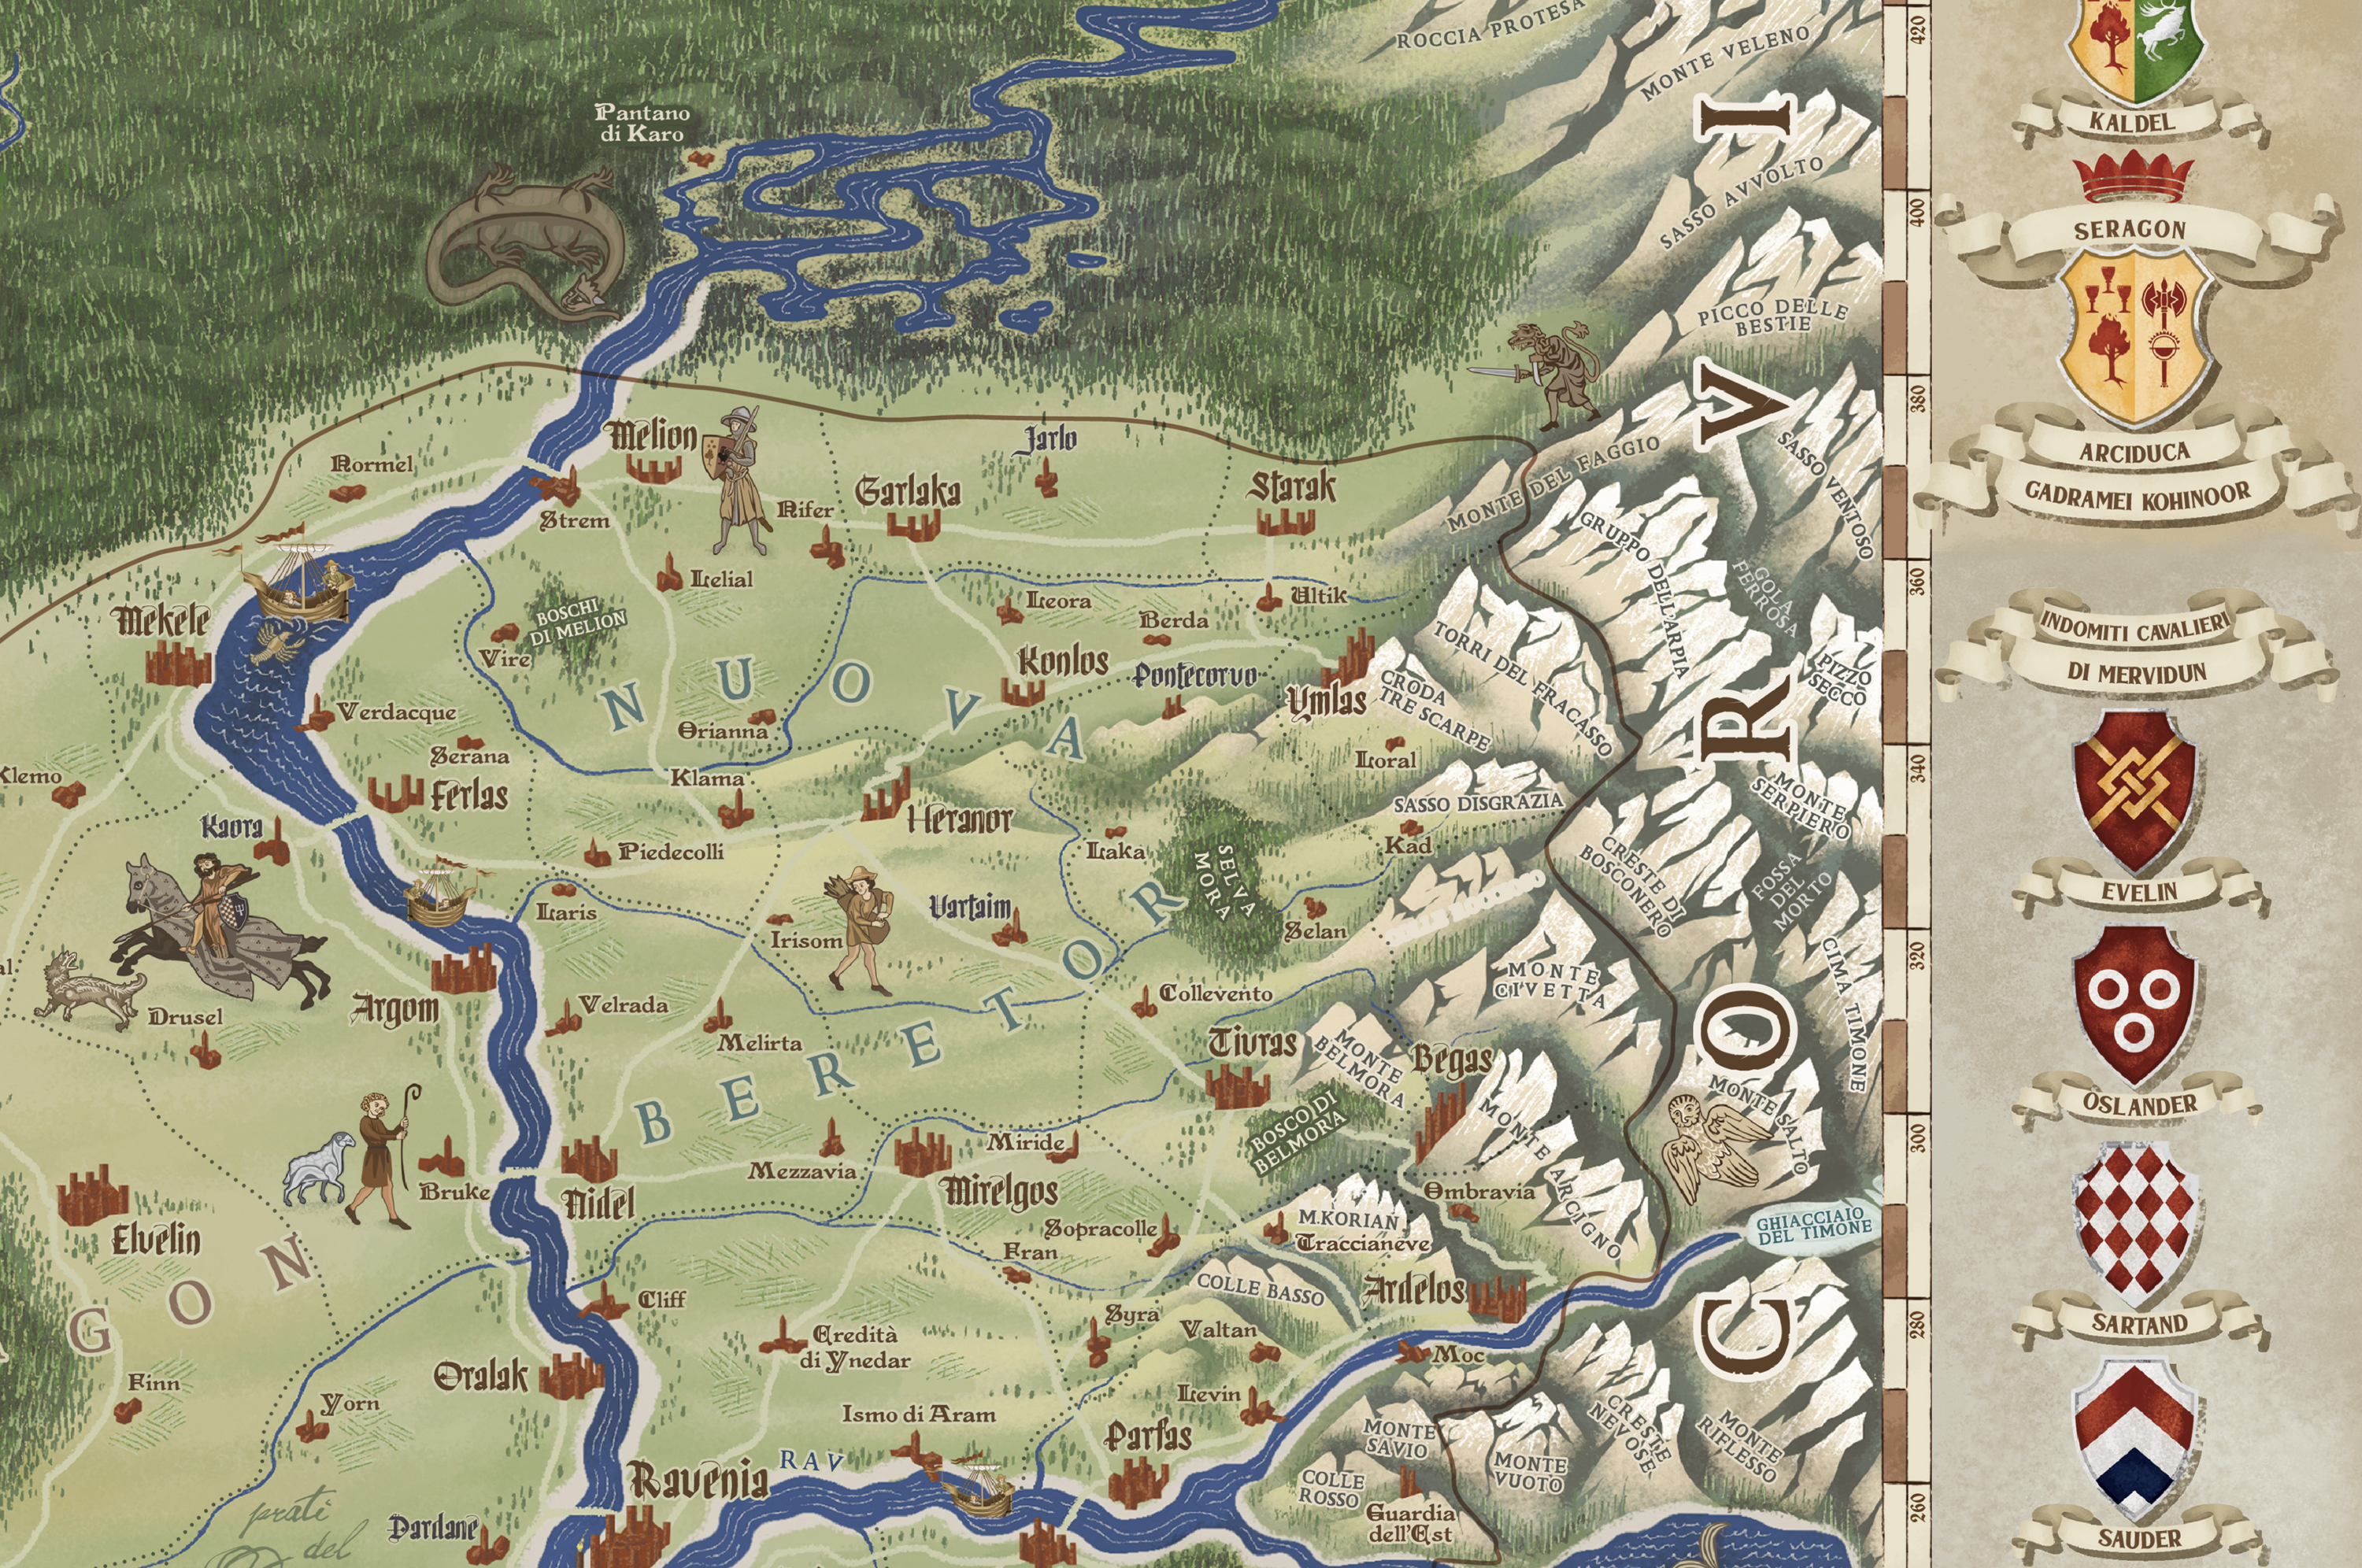 Mappa Ambria Symbaroum dettagliata in scala a colori disegnata a mano in stile medievale con araldica e regioni del Regno di Ambria - fanart del gioco di Ruolo Symbaroum - particolare della provincia di Nuova Beretor